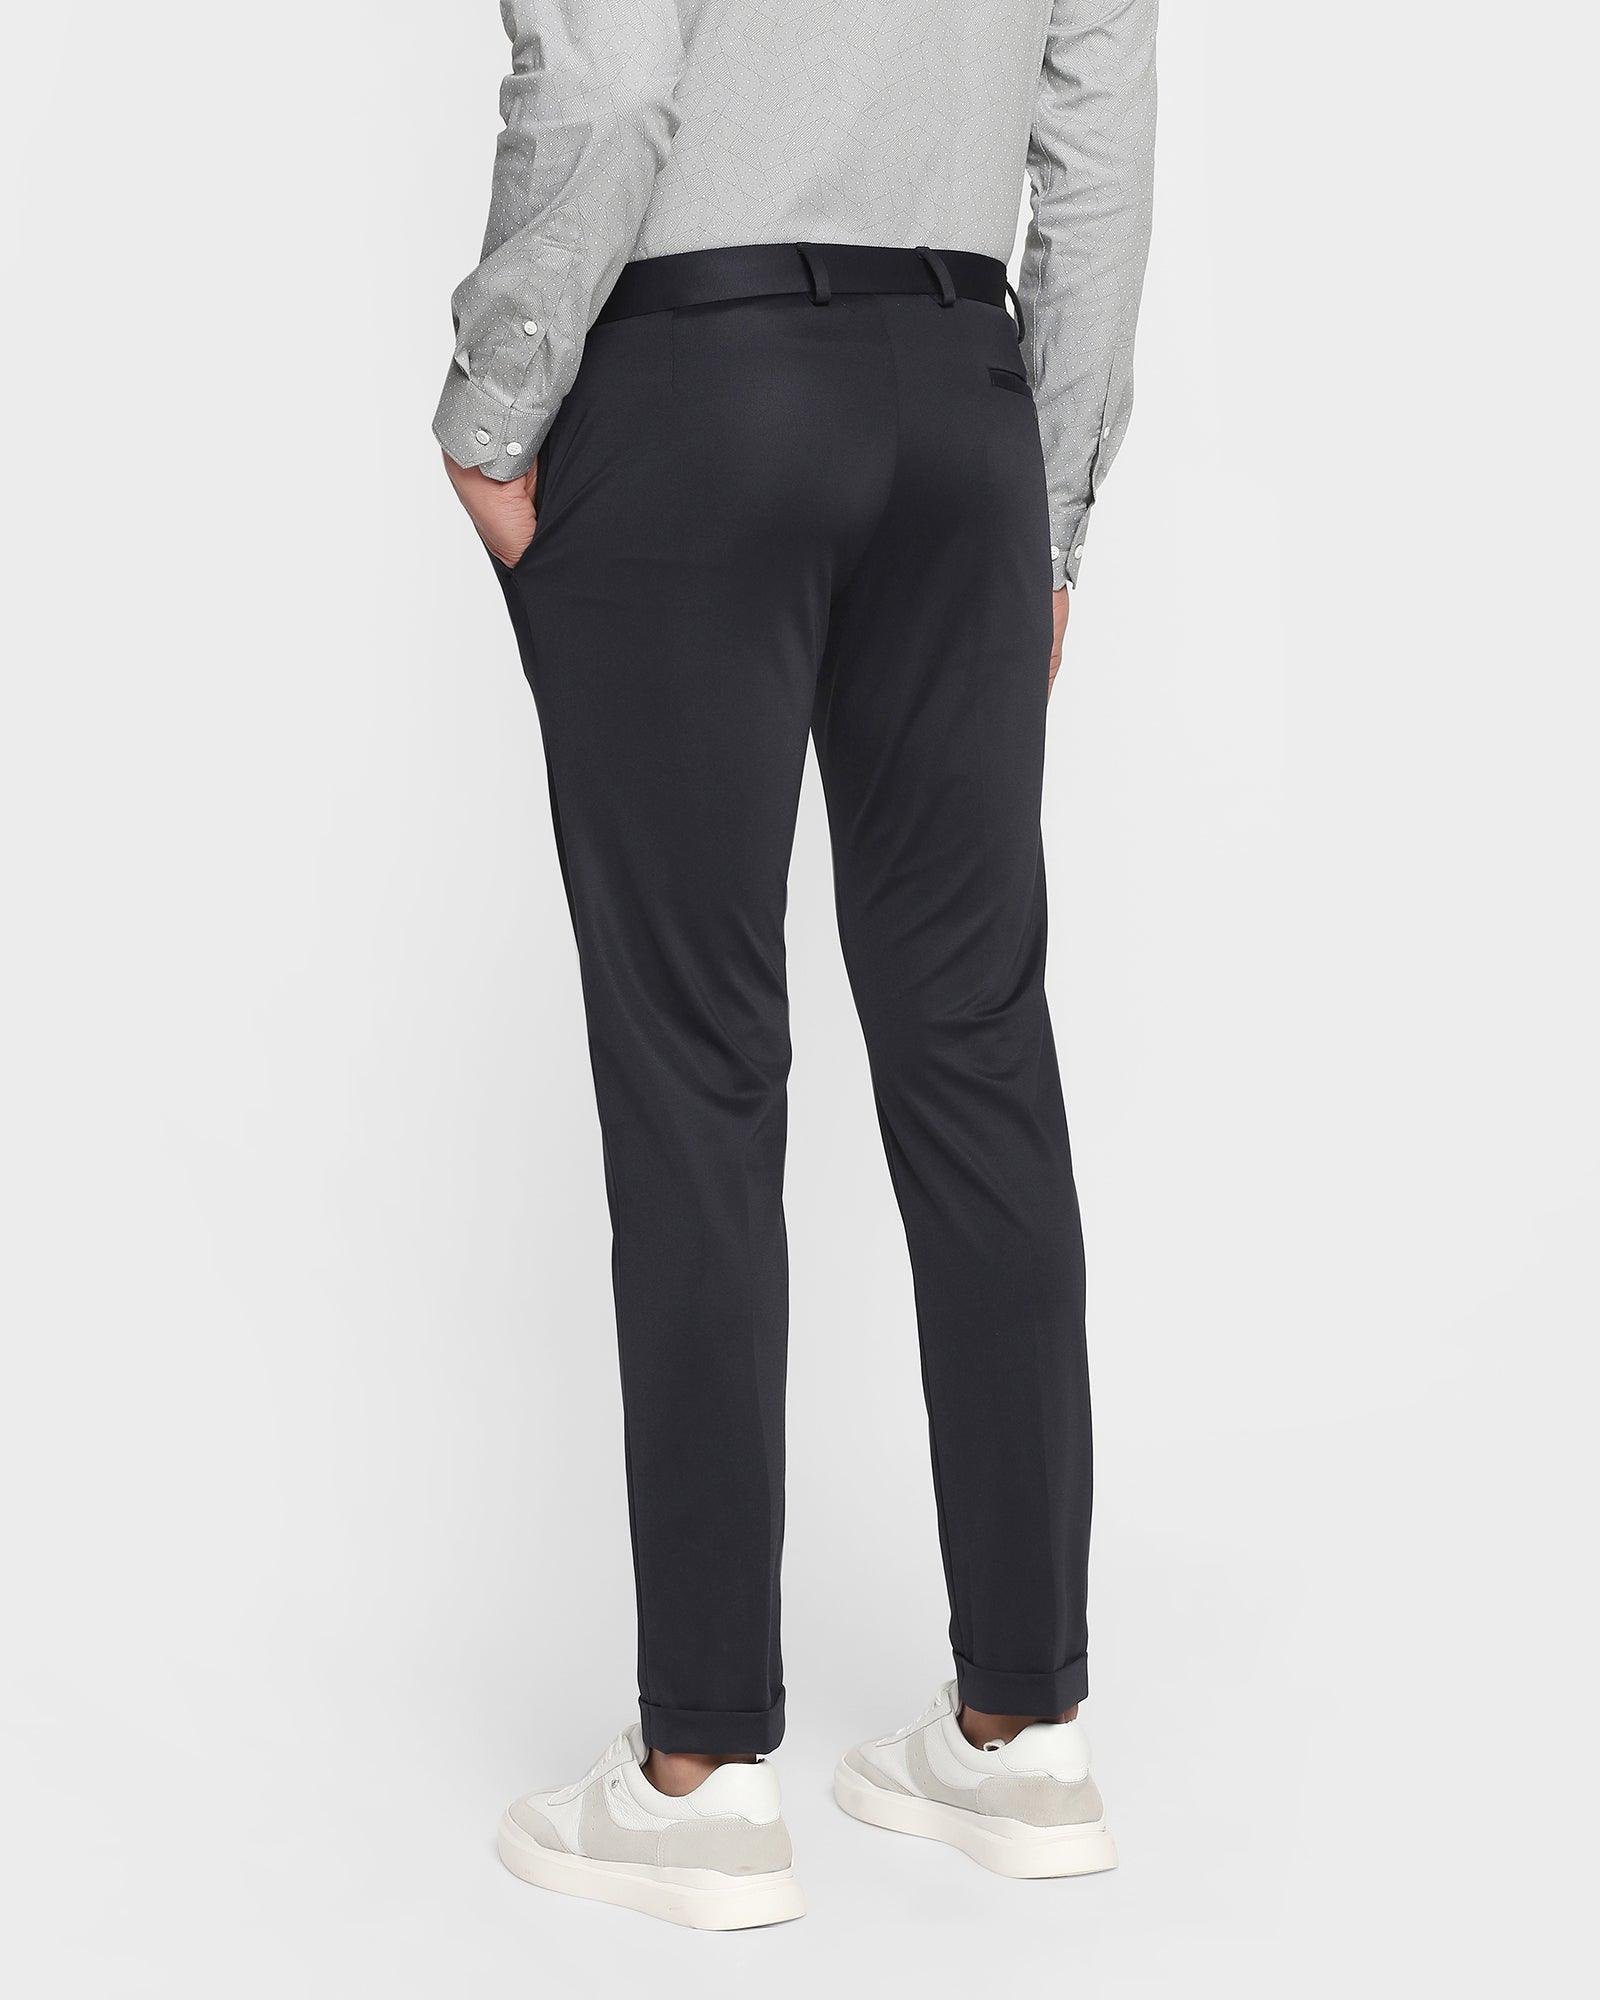 https://blackberrys.com/cdn/shop/files/techpro-textured-formal-trousers-in-black-phoenix-fit-hazel-blackberrys-clothing-2.jpg?v=1685951883